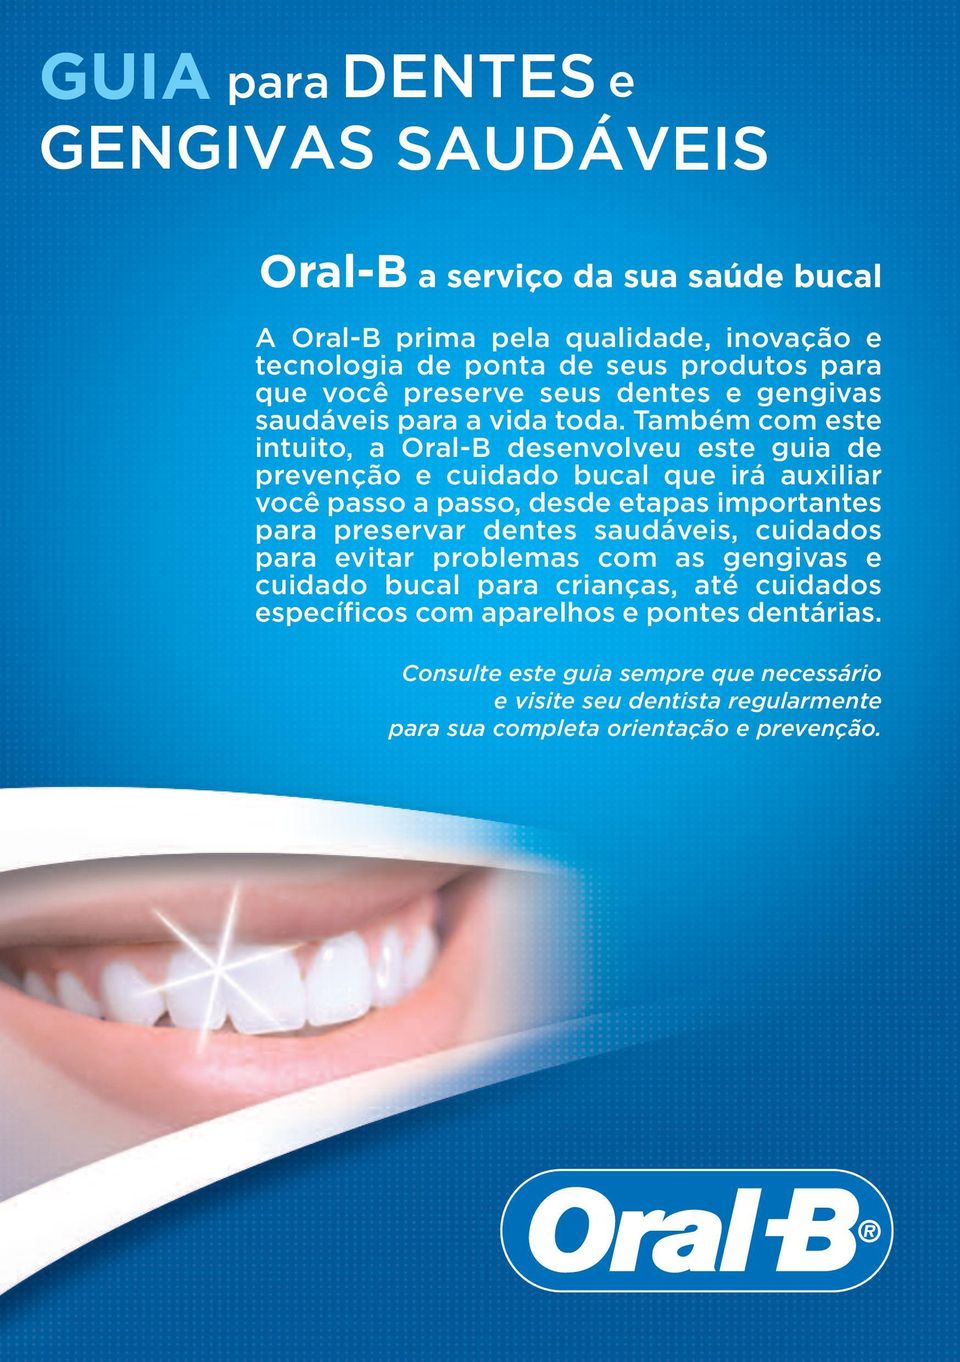 Também com este intuito, a Oral-B desenvolveu este guia de prevenção e cuidado bucal que irá auxiliar você passo a passo, desde etapas importantes para preservar